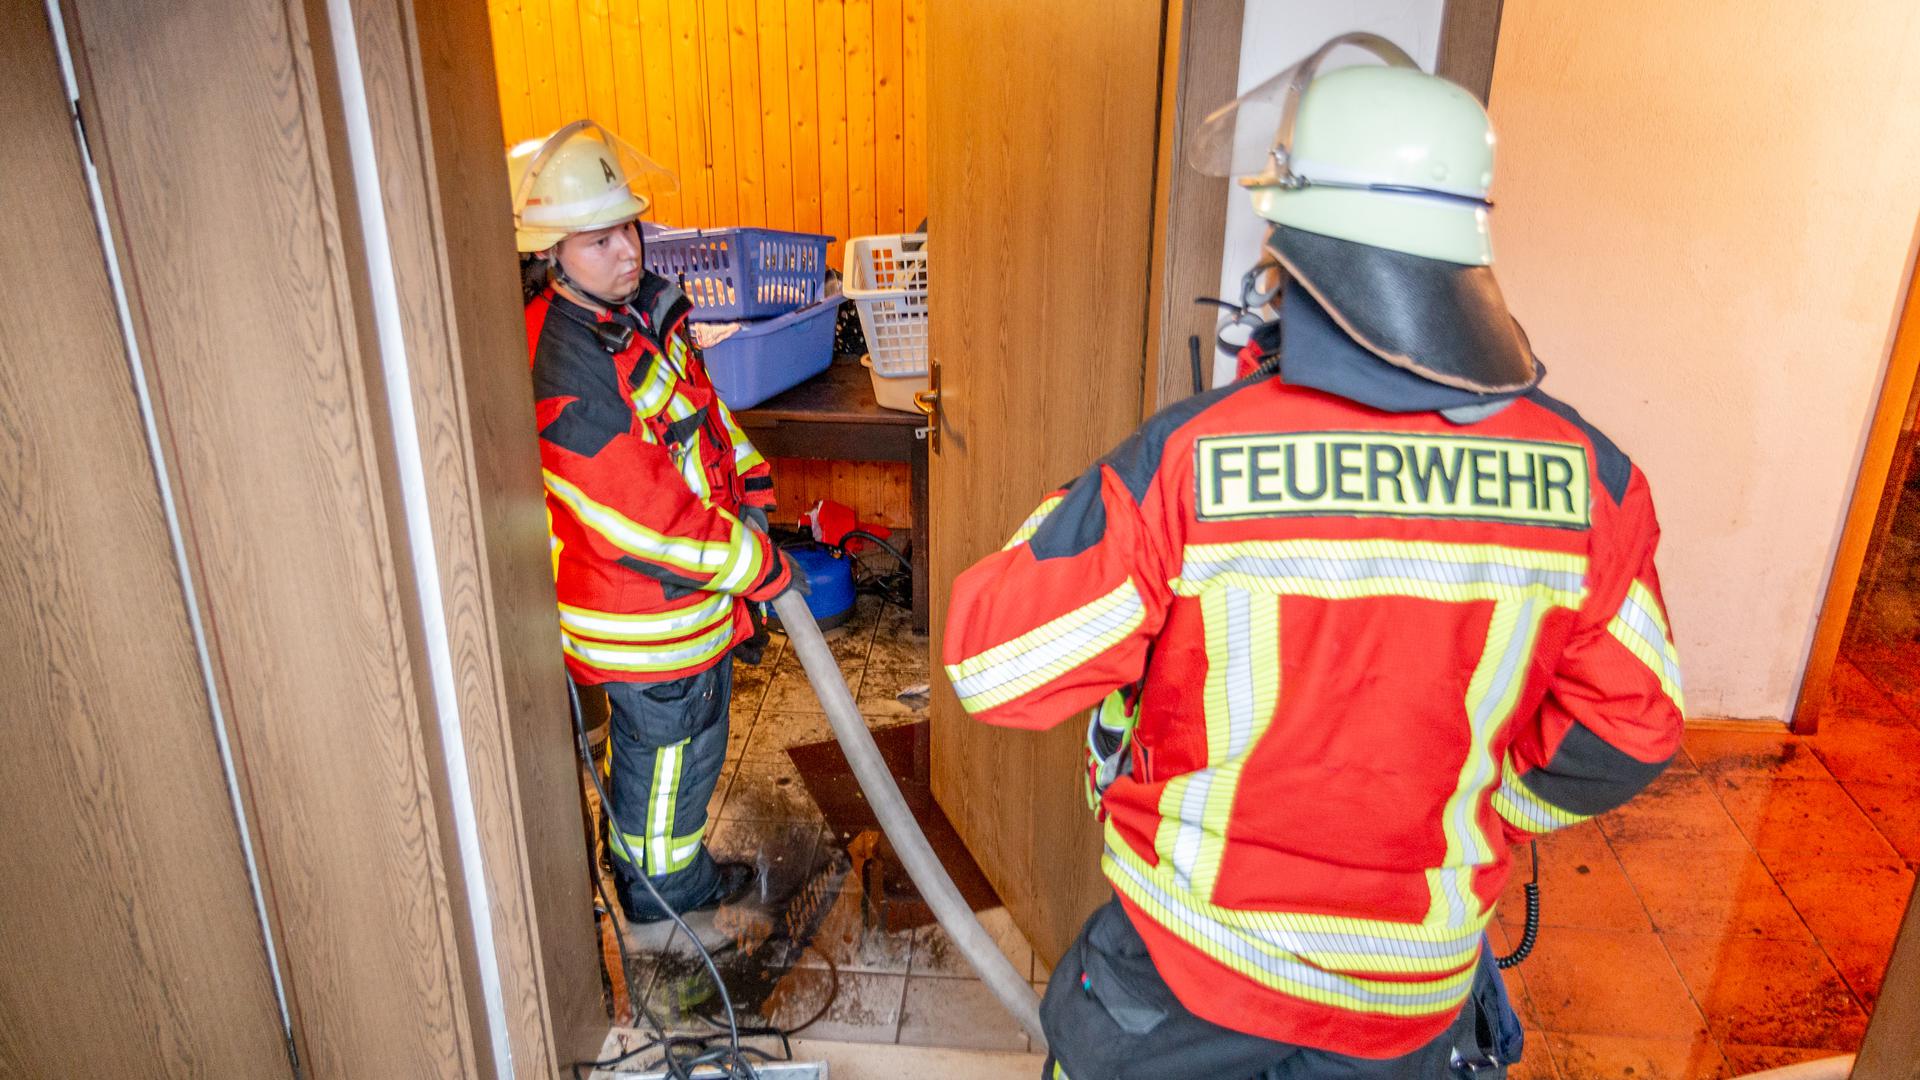 Schnelle Hilfe: Wenn die Feuerwehr anrückt, um den Keller leer zu pumpen, kann eine gute Versicherung sinnvoll sein – wie dieser Tage beispielsweise in Hügelsheim.